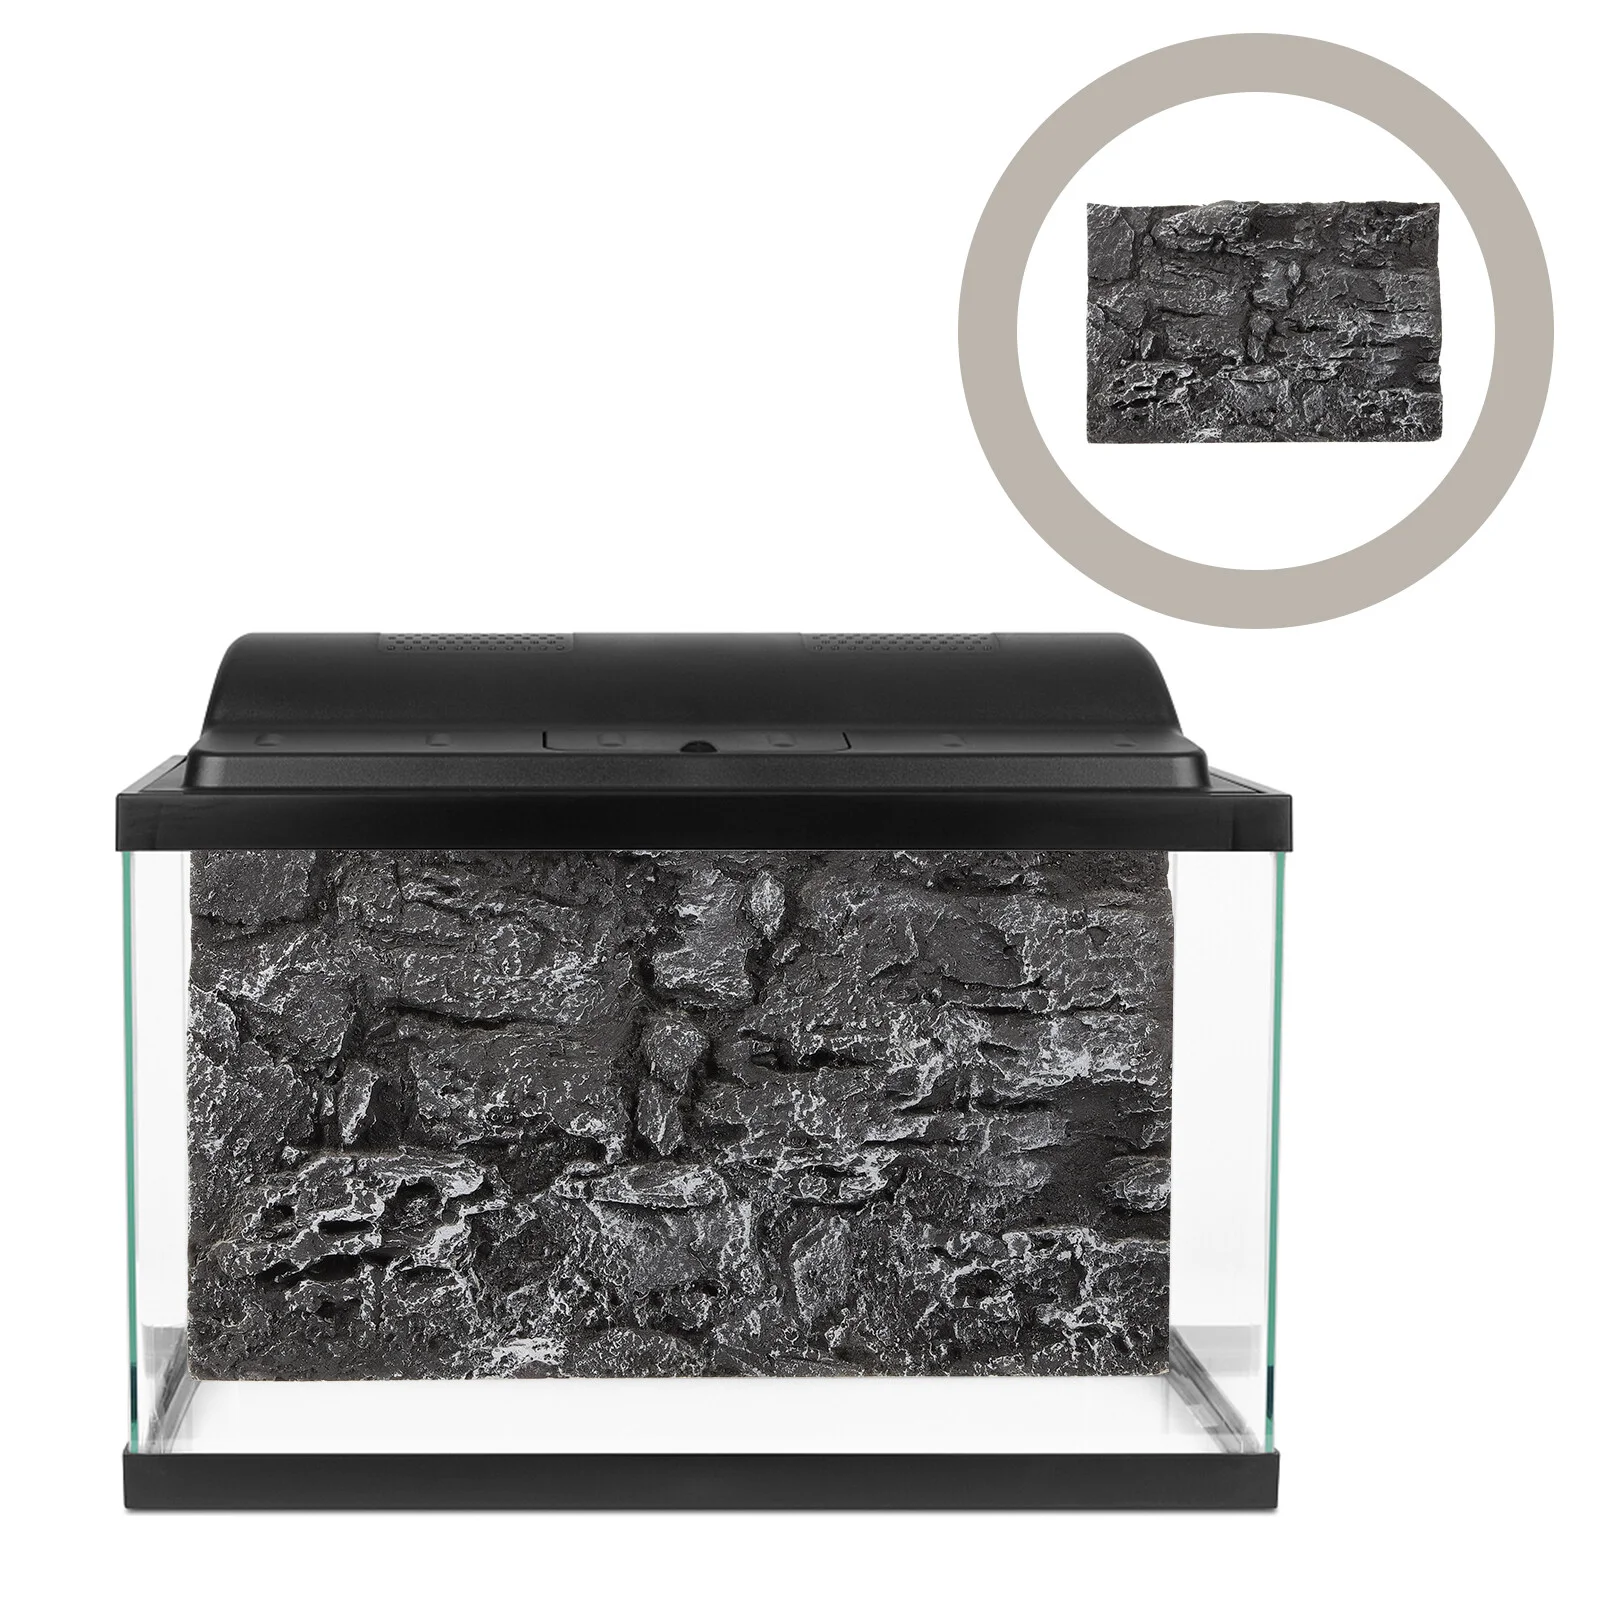 

Фон каменная плита Террариум пробка аквариум украшения Аквариум фоны доска рептилии